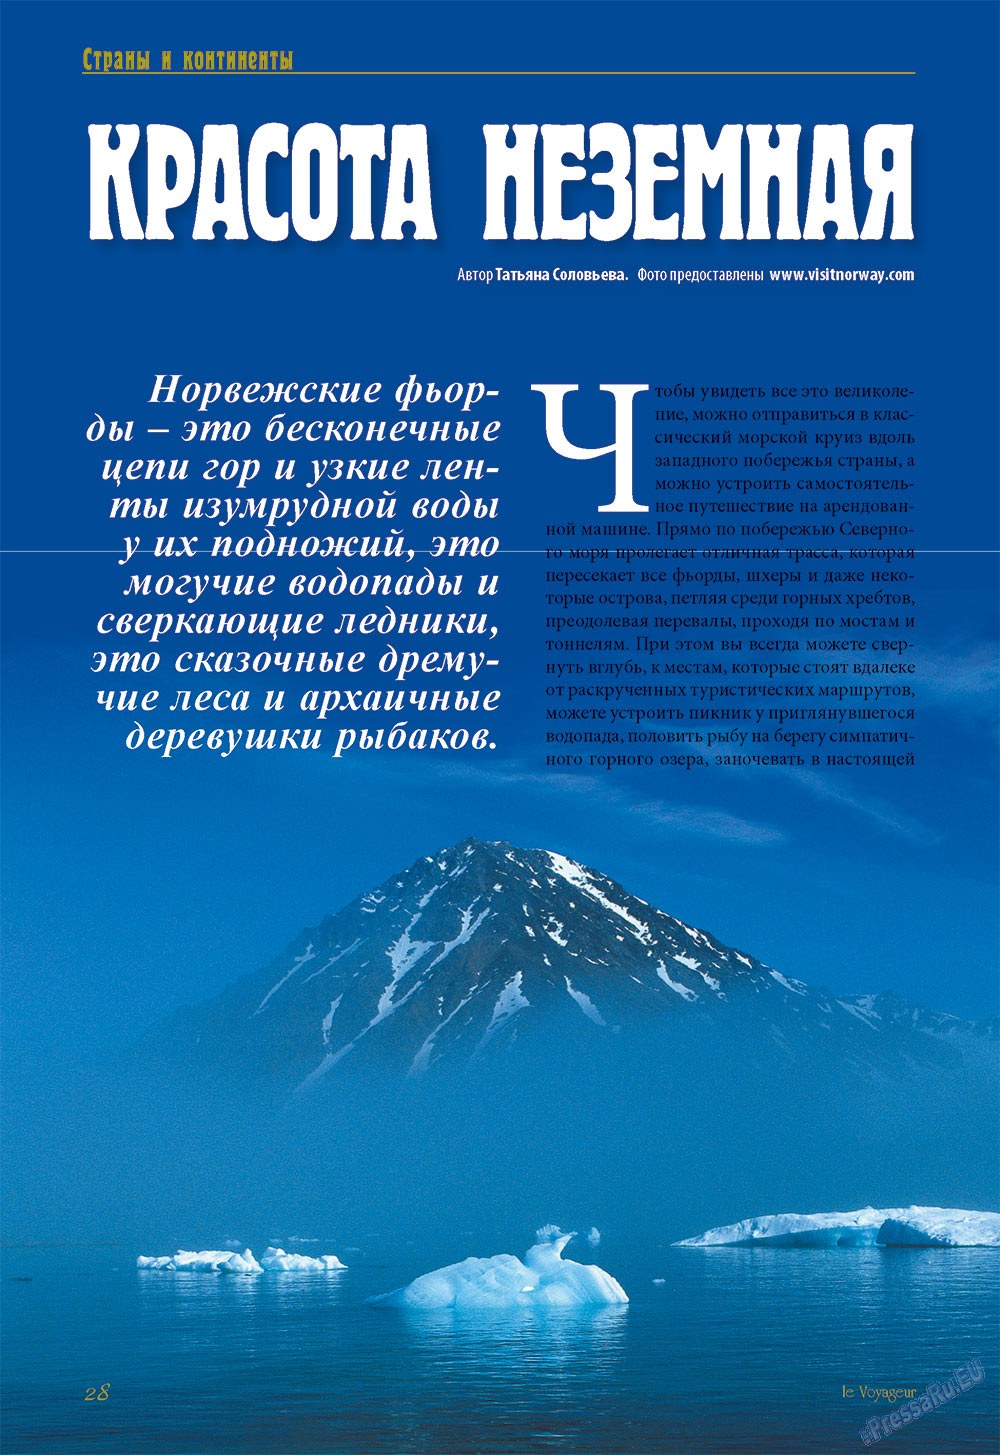 Le Voyageur (журнал). 2013 год, номер 26, стр. 30